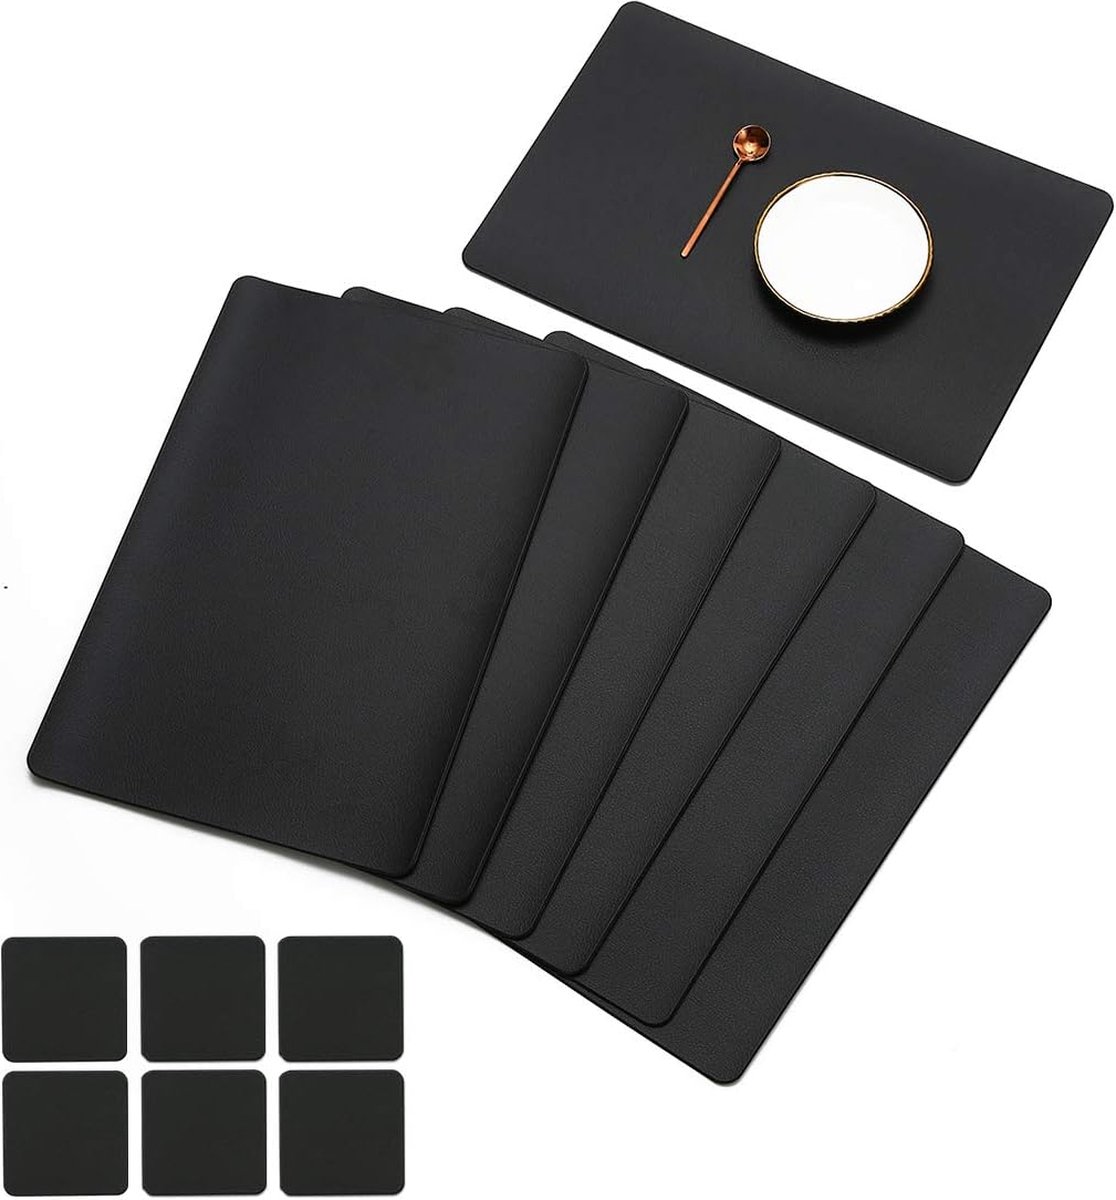 Set van 6 placemats en 6 onderzetters veeg schoon antislip vinyl PVC hittebestendige placemats voor keukentafel 30 * 45cm zwart